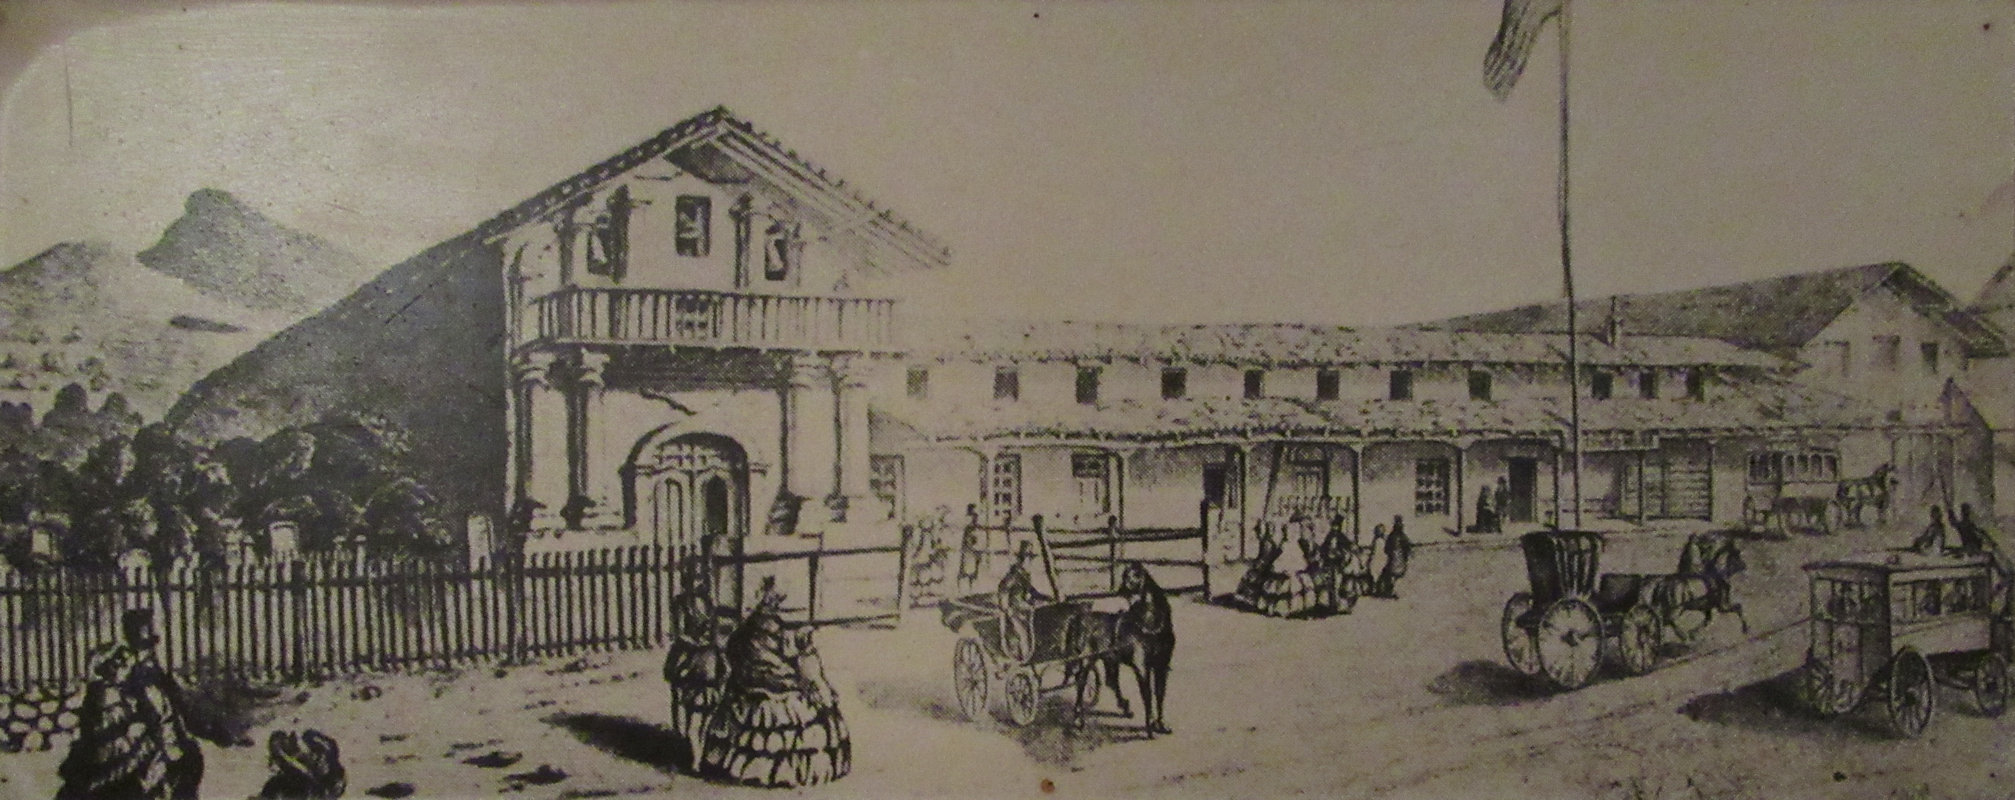 Missionsstation San Francisco de Asis, errichtet 1776, Bild im Museum neben seinem Wohnhaus